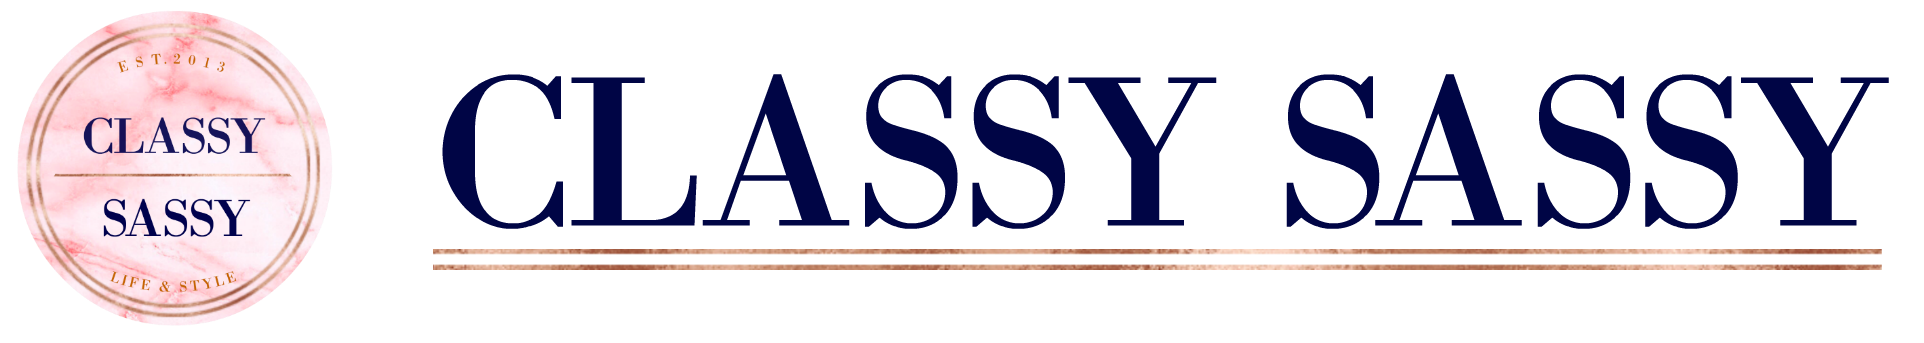 Home page – Sassy Shiny